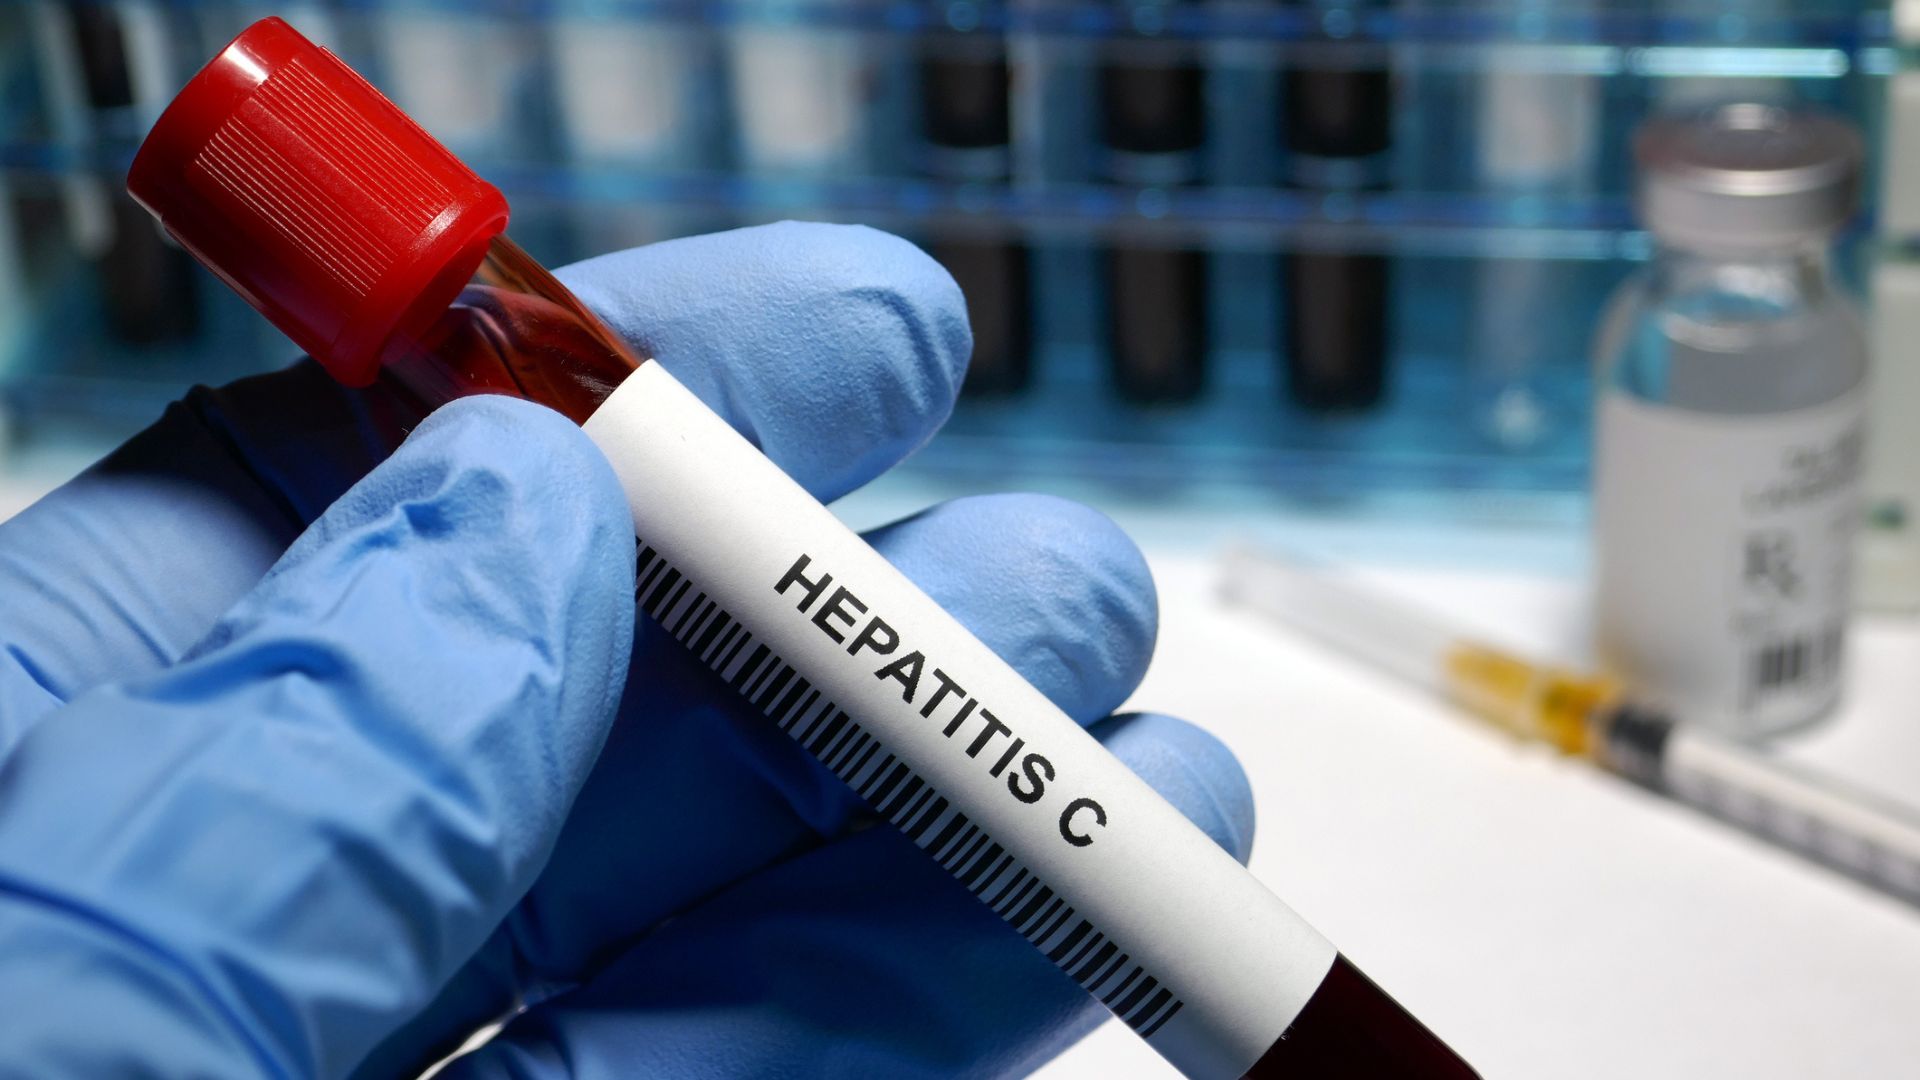 Hepatitis C treatment